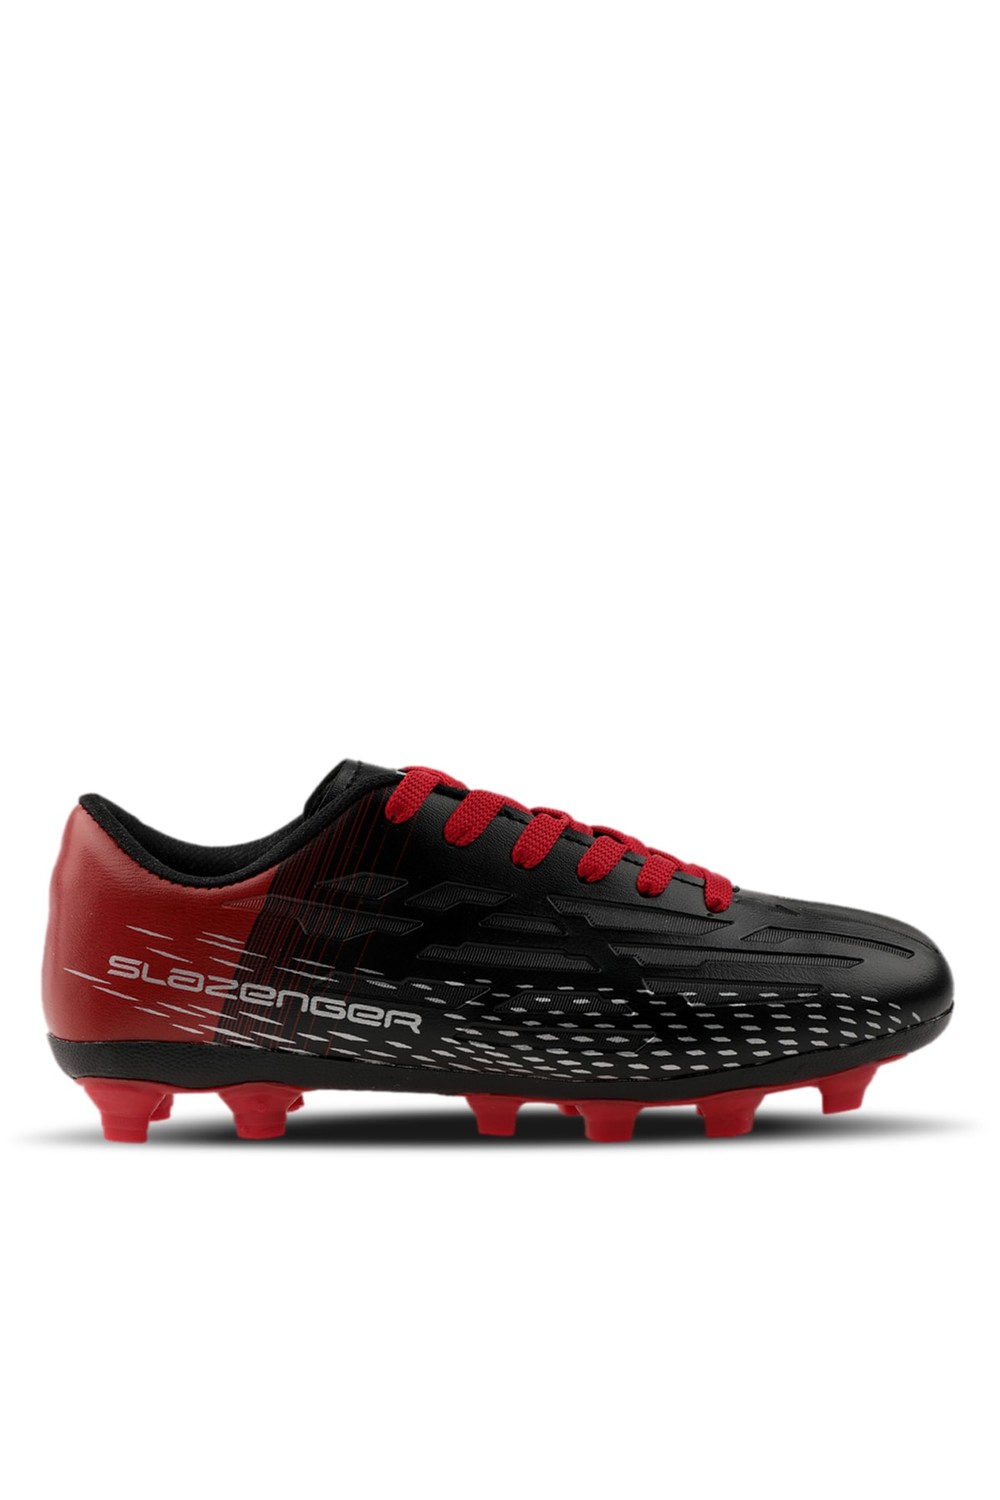 Slazenger Score I Kr Football Men's Astroturf Shoes Black / Red